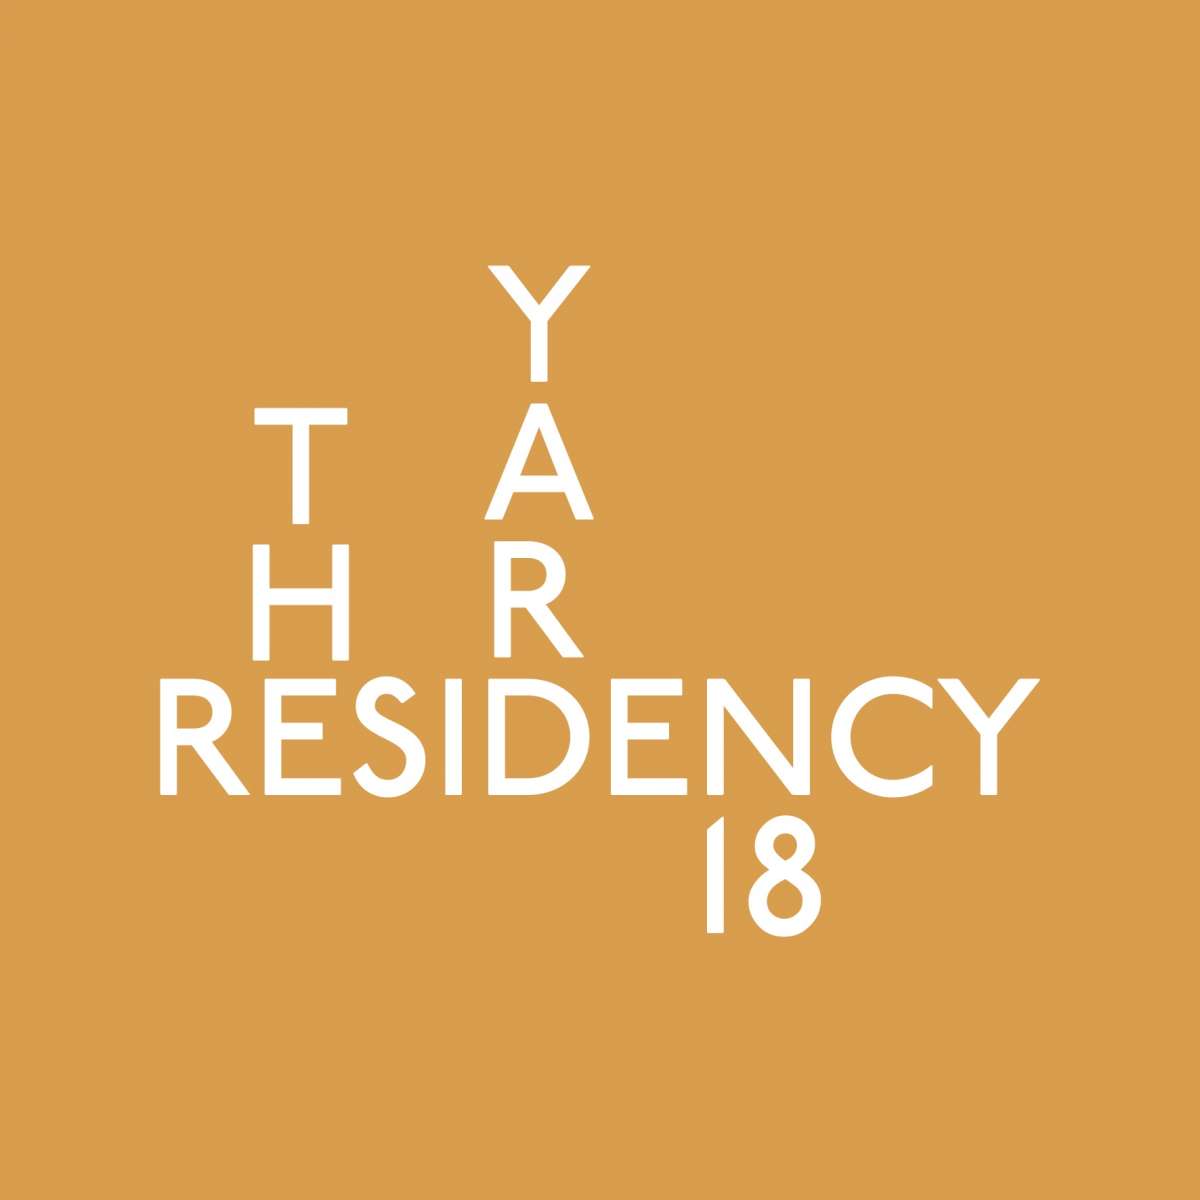 theYard.Residency.18